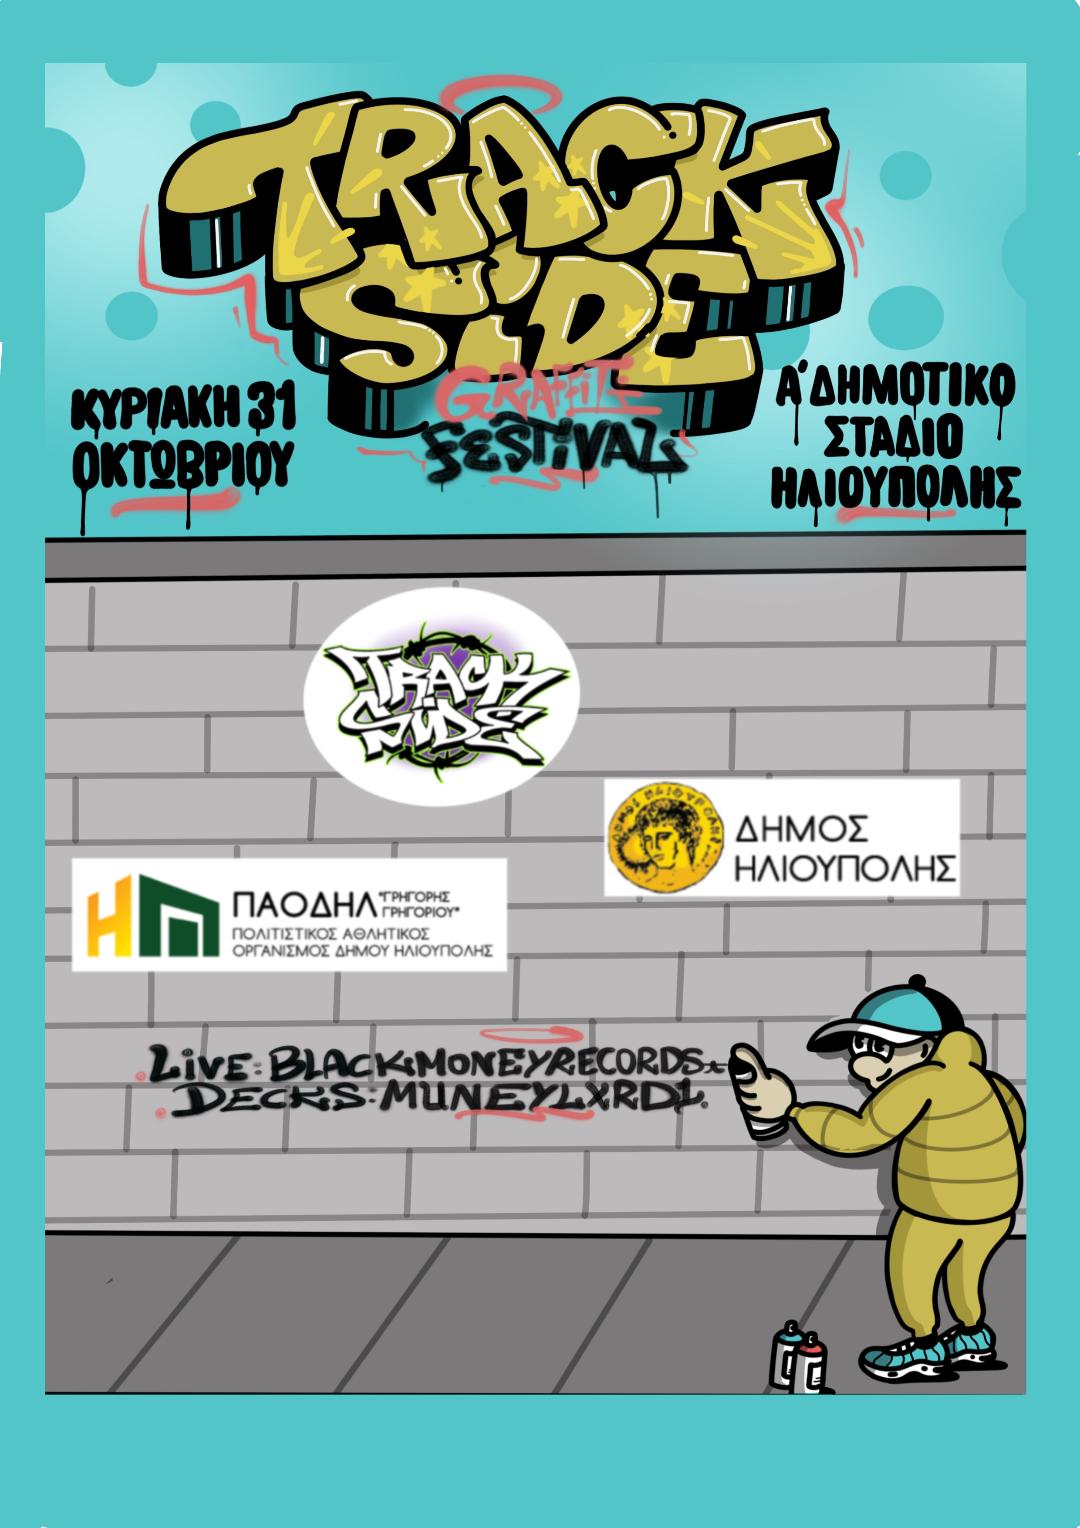 Trackside Festival στον Δήμο Ηλιούπολης με 70 graffiti artists